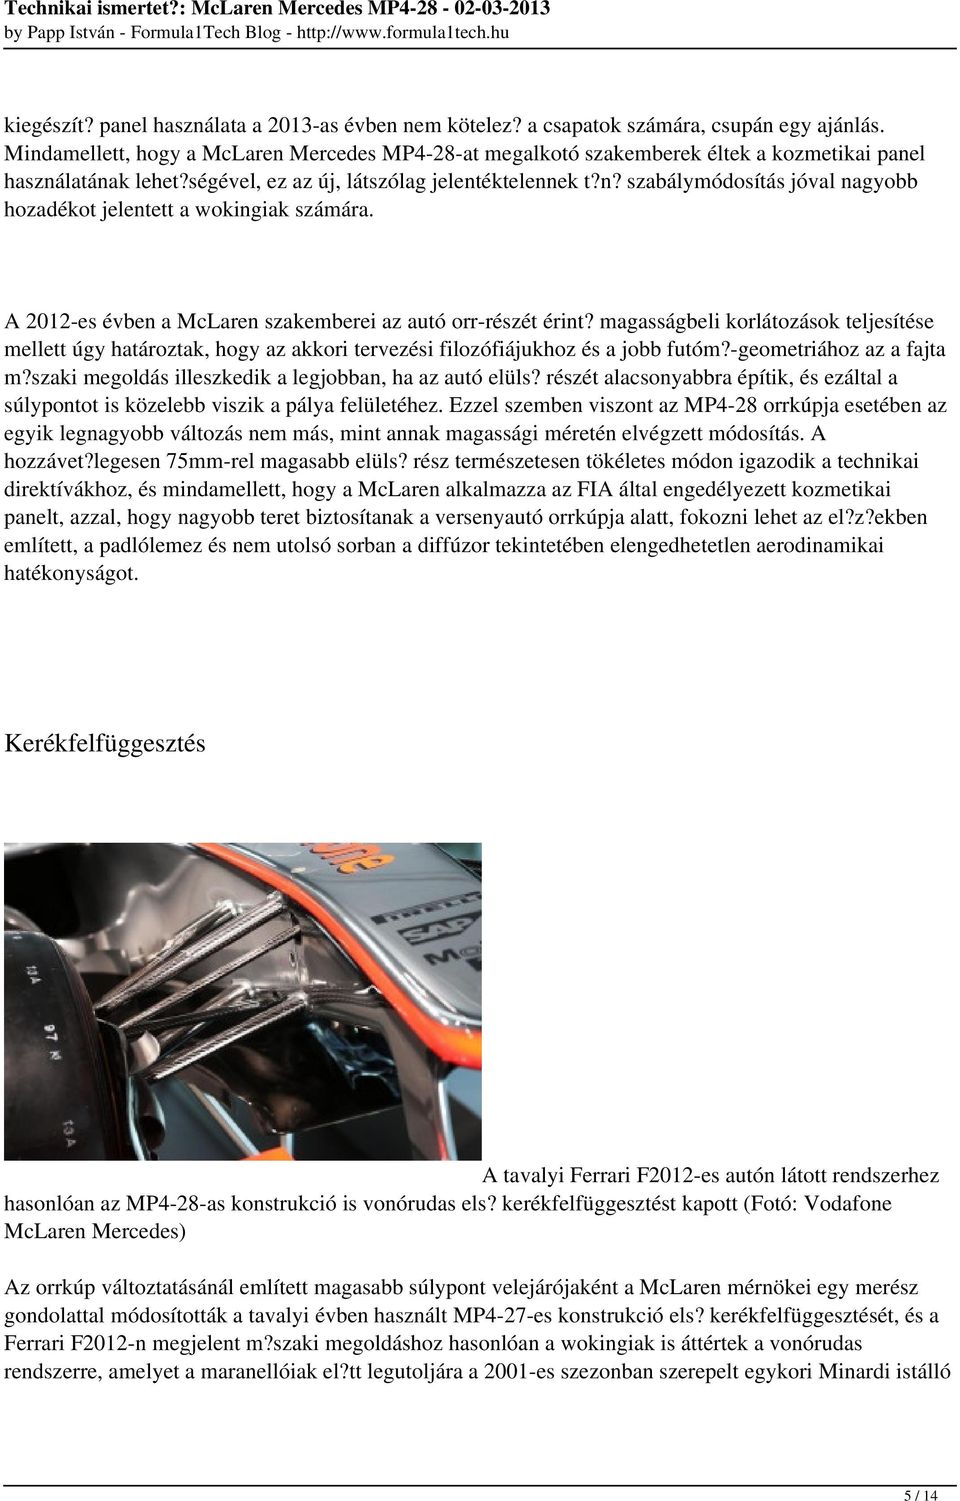 A 2012-es évben a McLaren szakemberei az autó orr-részét érint? magasságbeli korlátozások teljesítése mellett úgy határoztak, hogy az akkori tervezési filozófiájukhoz és a jobb futóm?